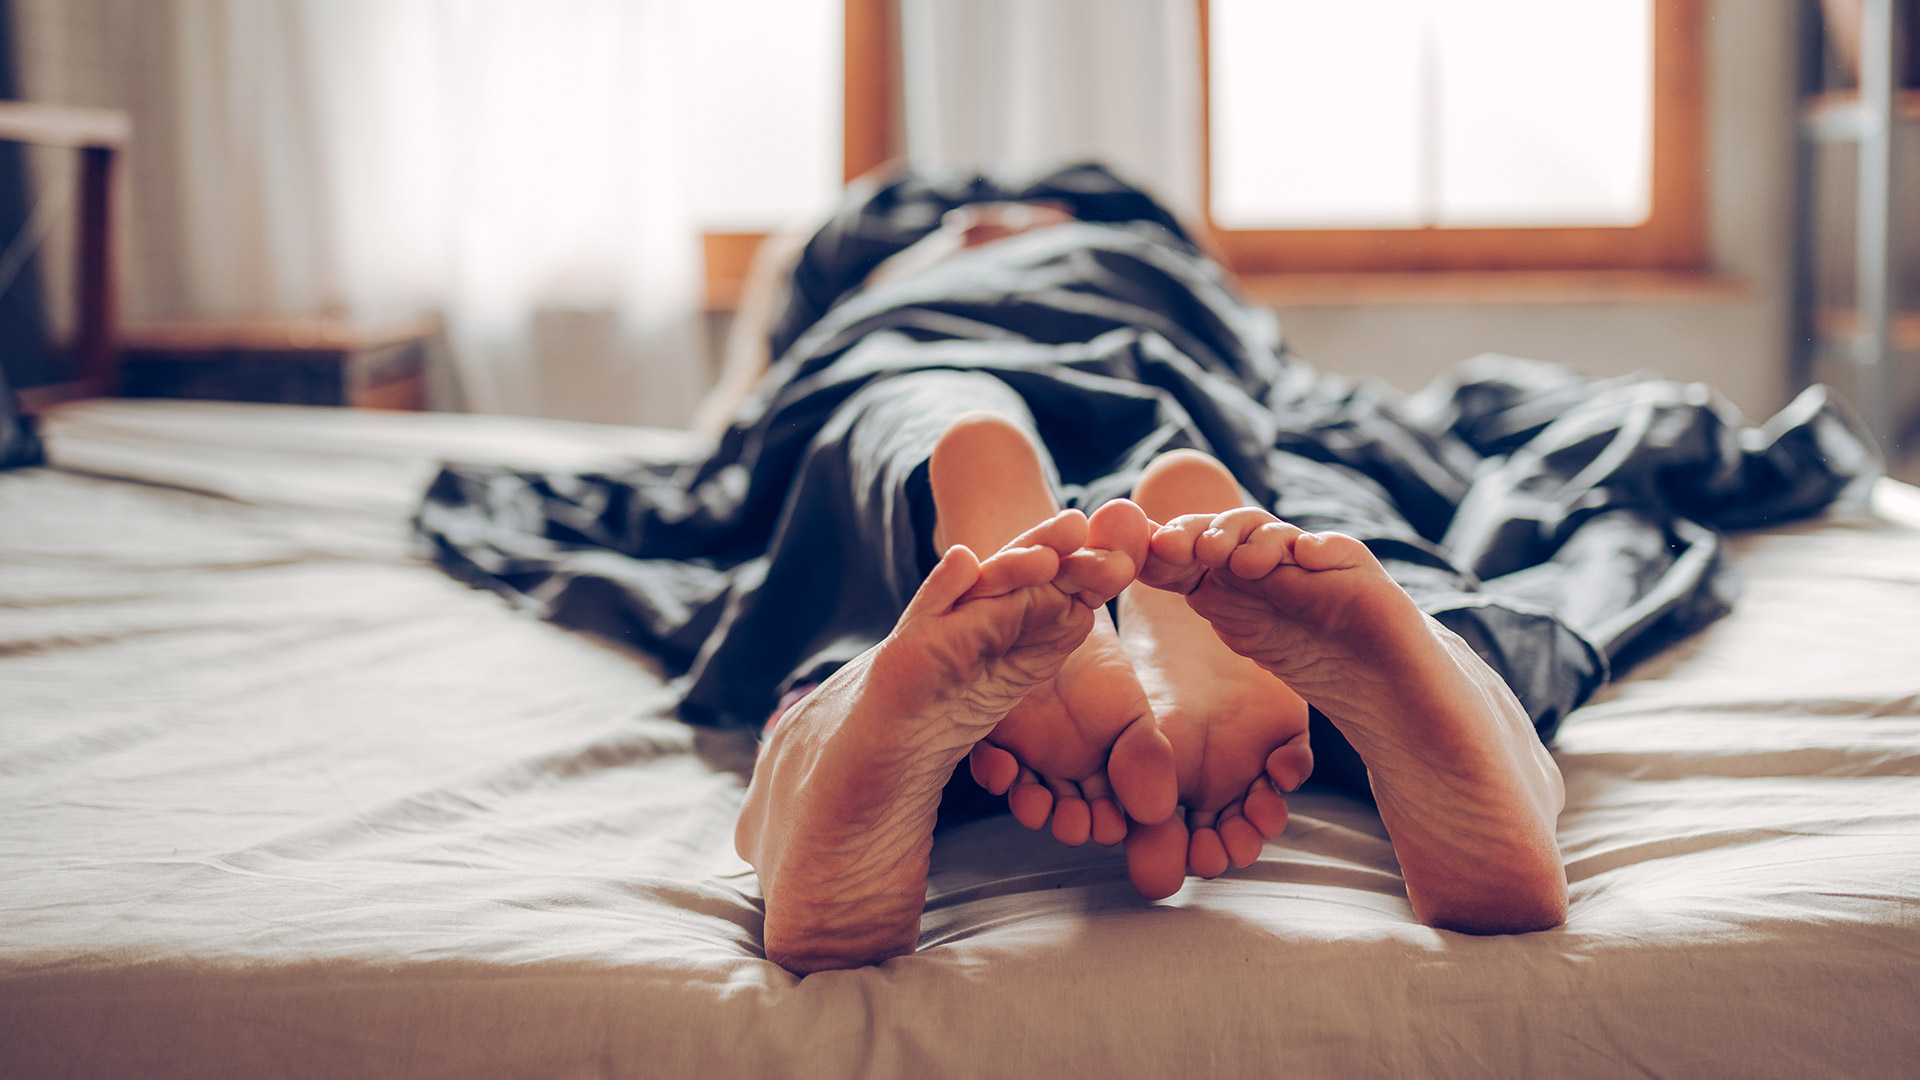 “El orgasmo puede bloquear el dolor”, señalaron los expertos